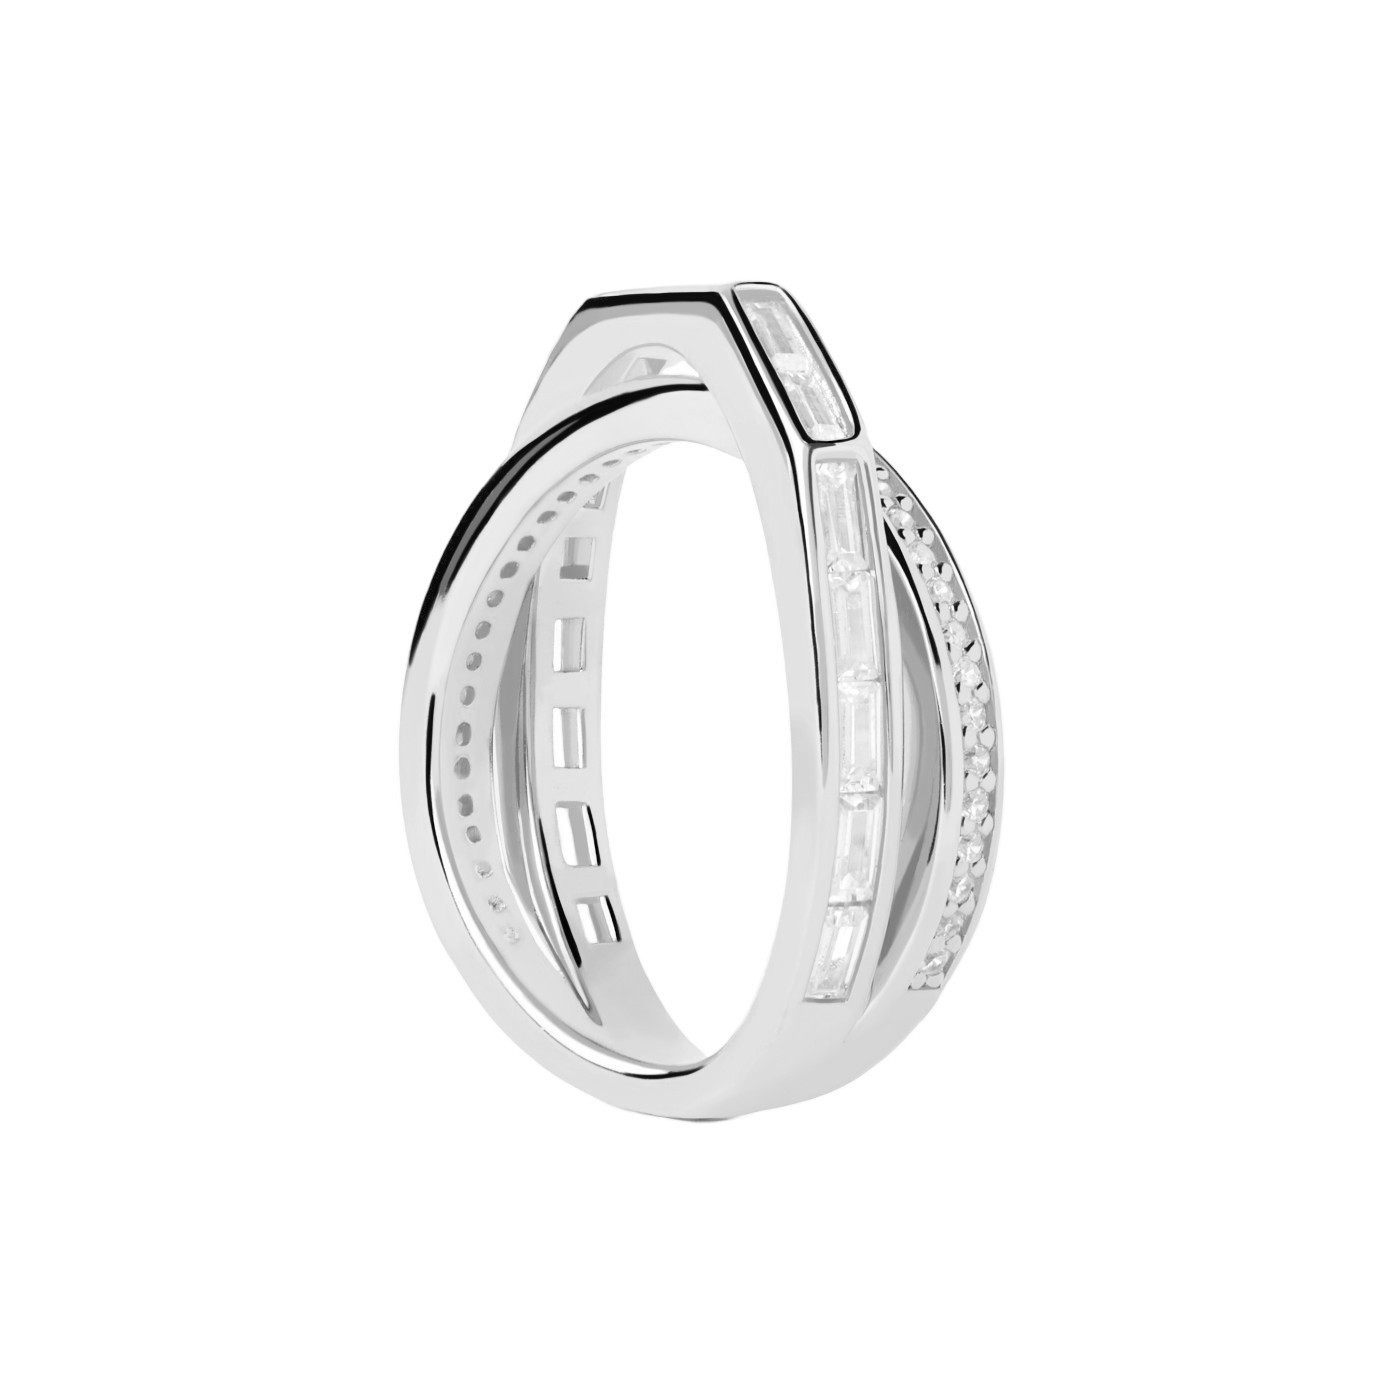 PDPAOLA Třpytivý stříbrný prsten se zirkony Olivia Essentials AN02-A10 58 mm